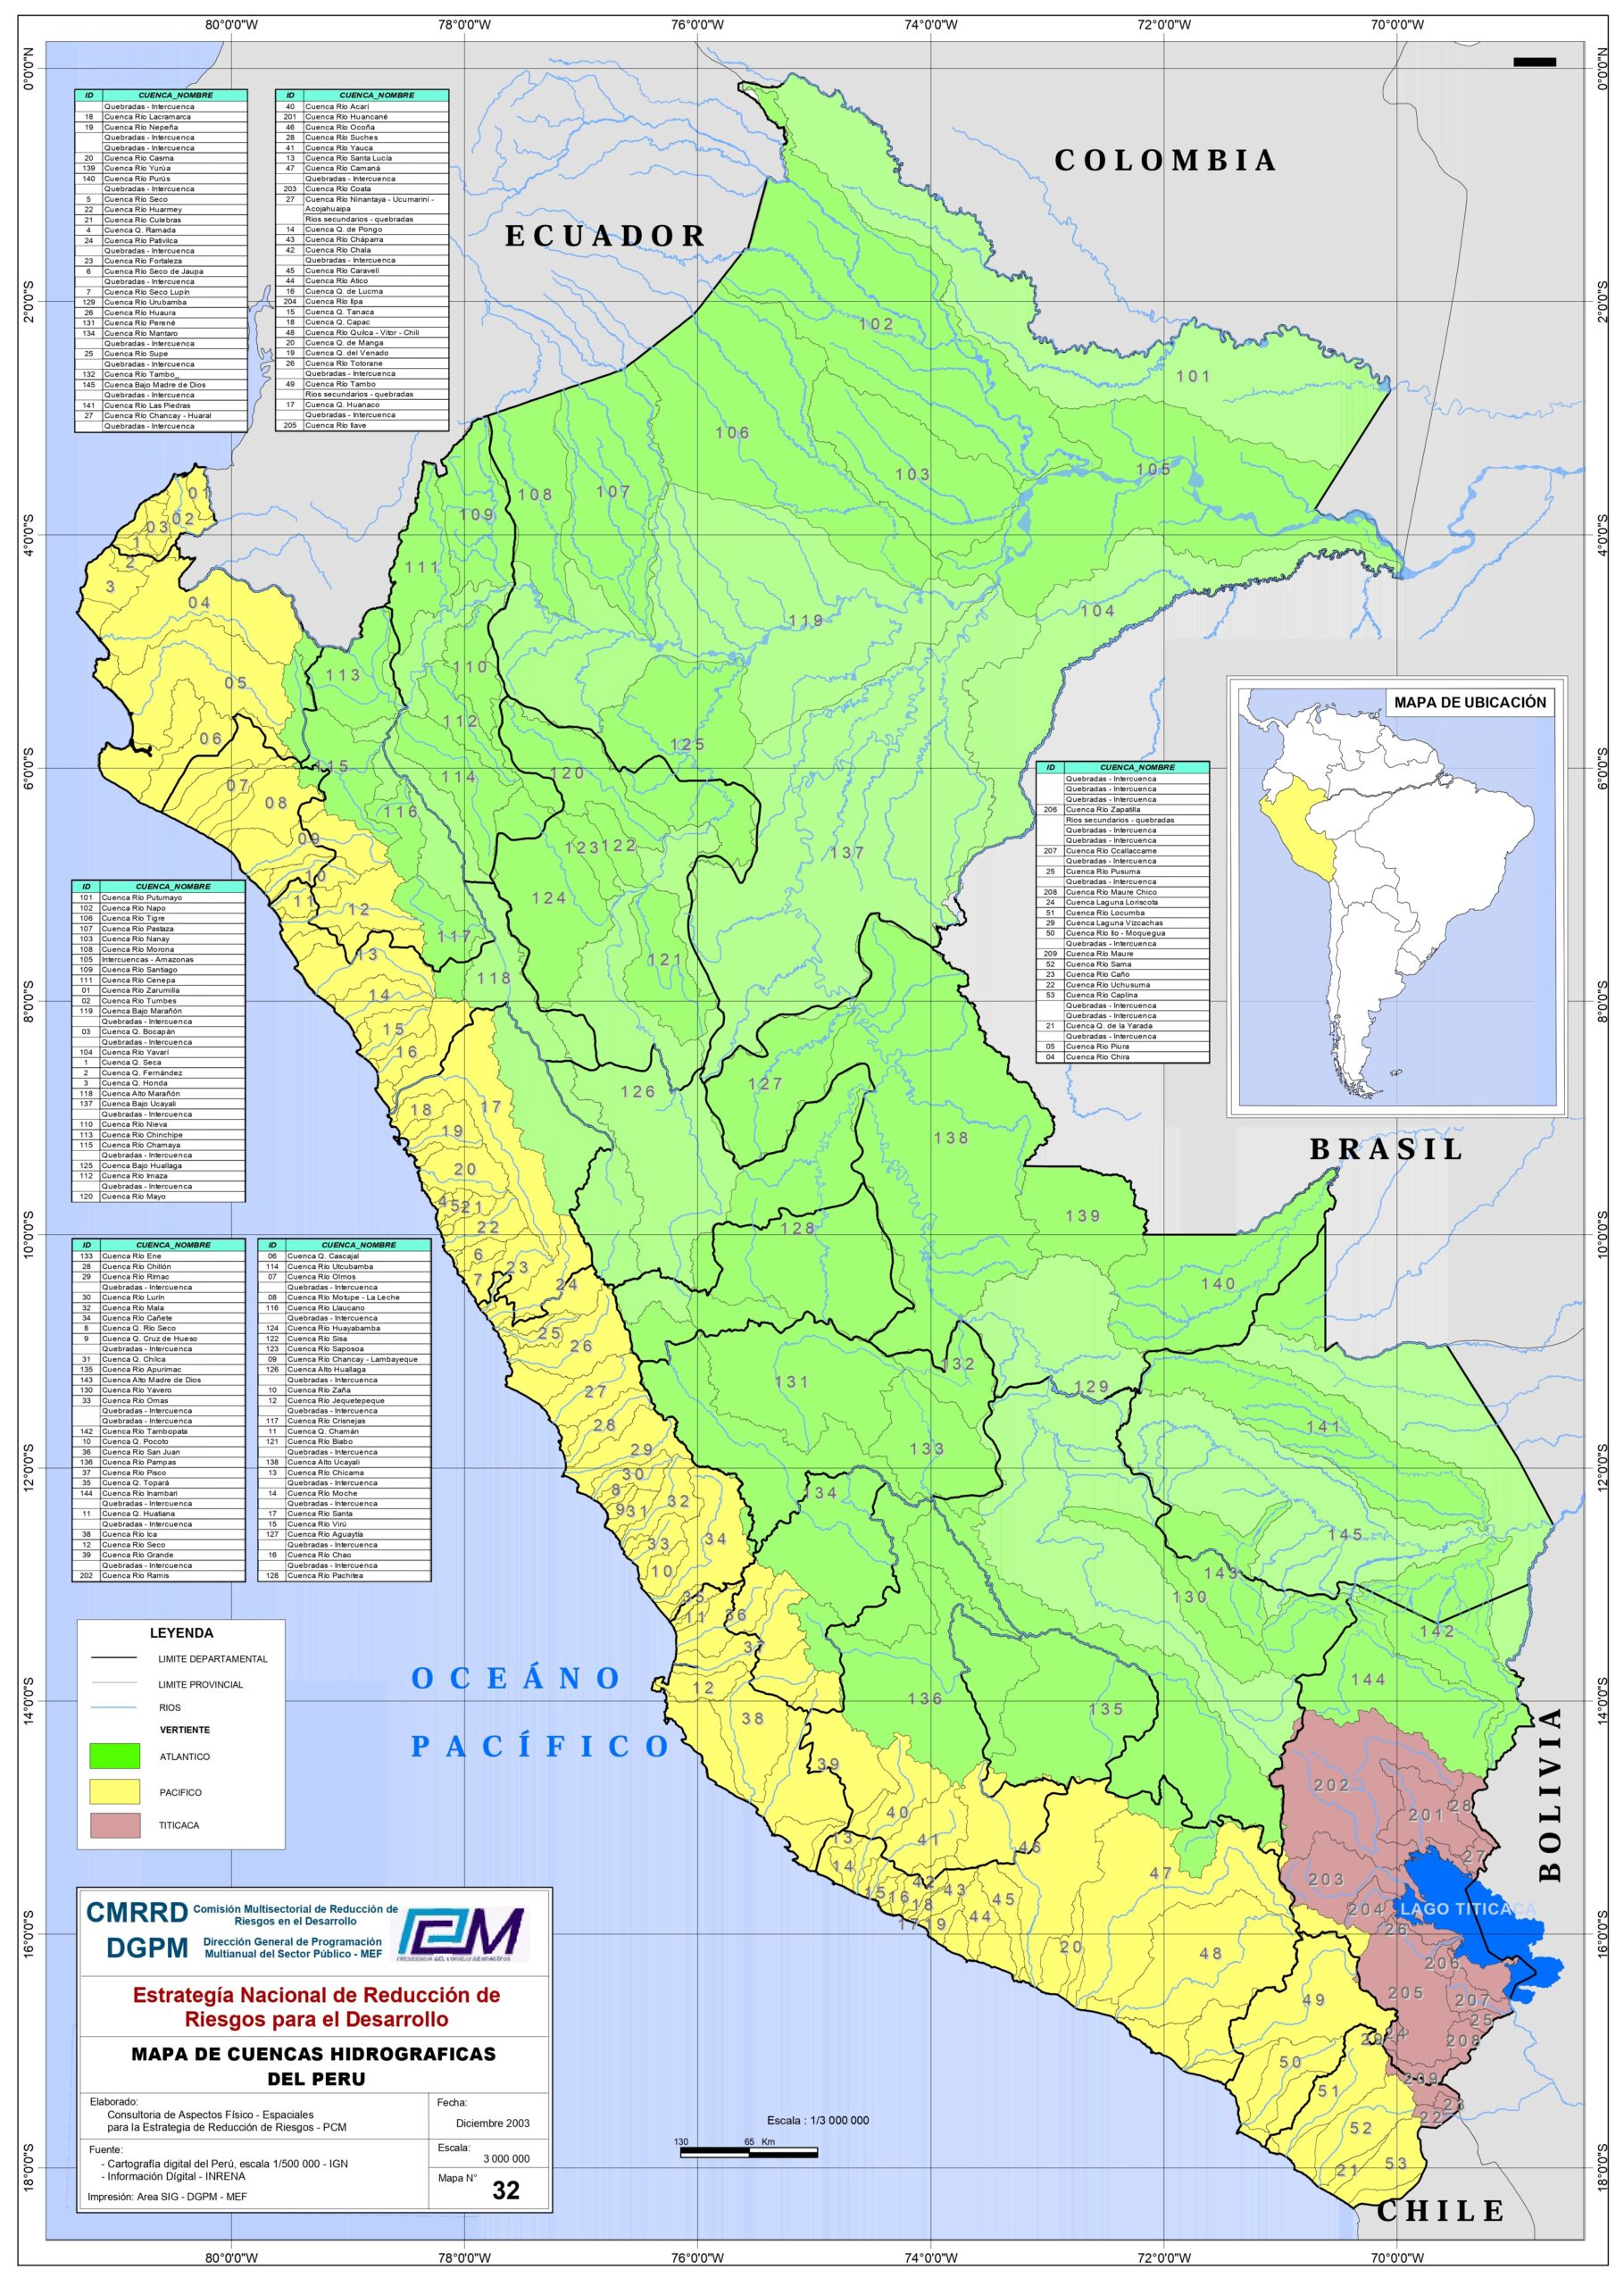 Cuencas hidrográficas del Perú (2003)